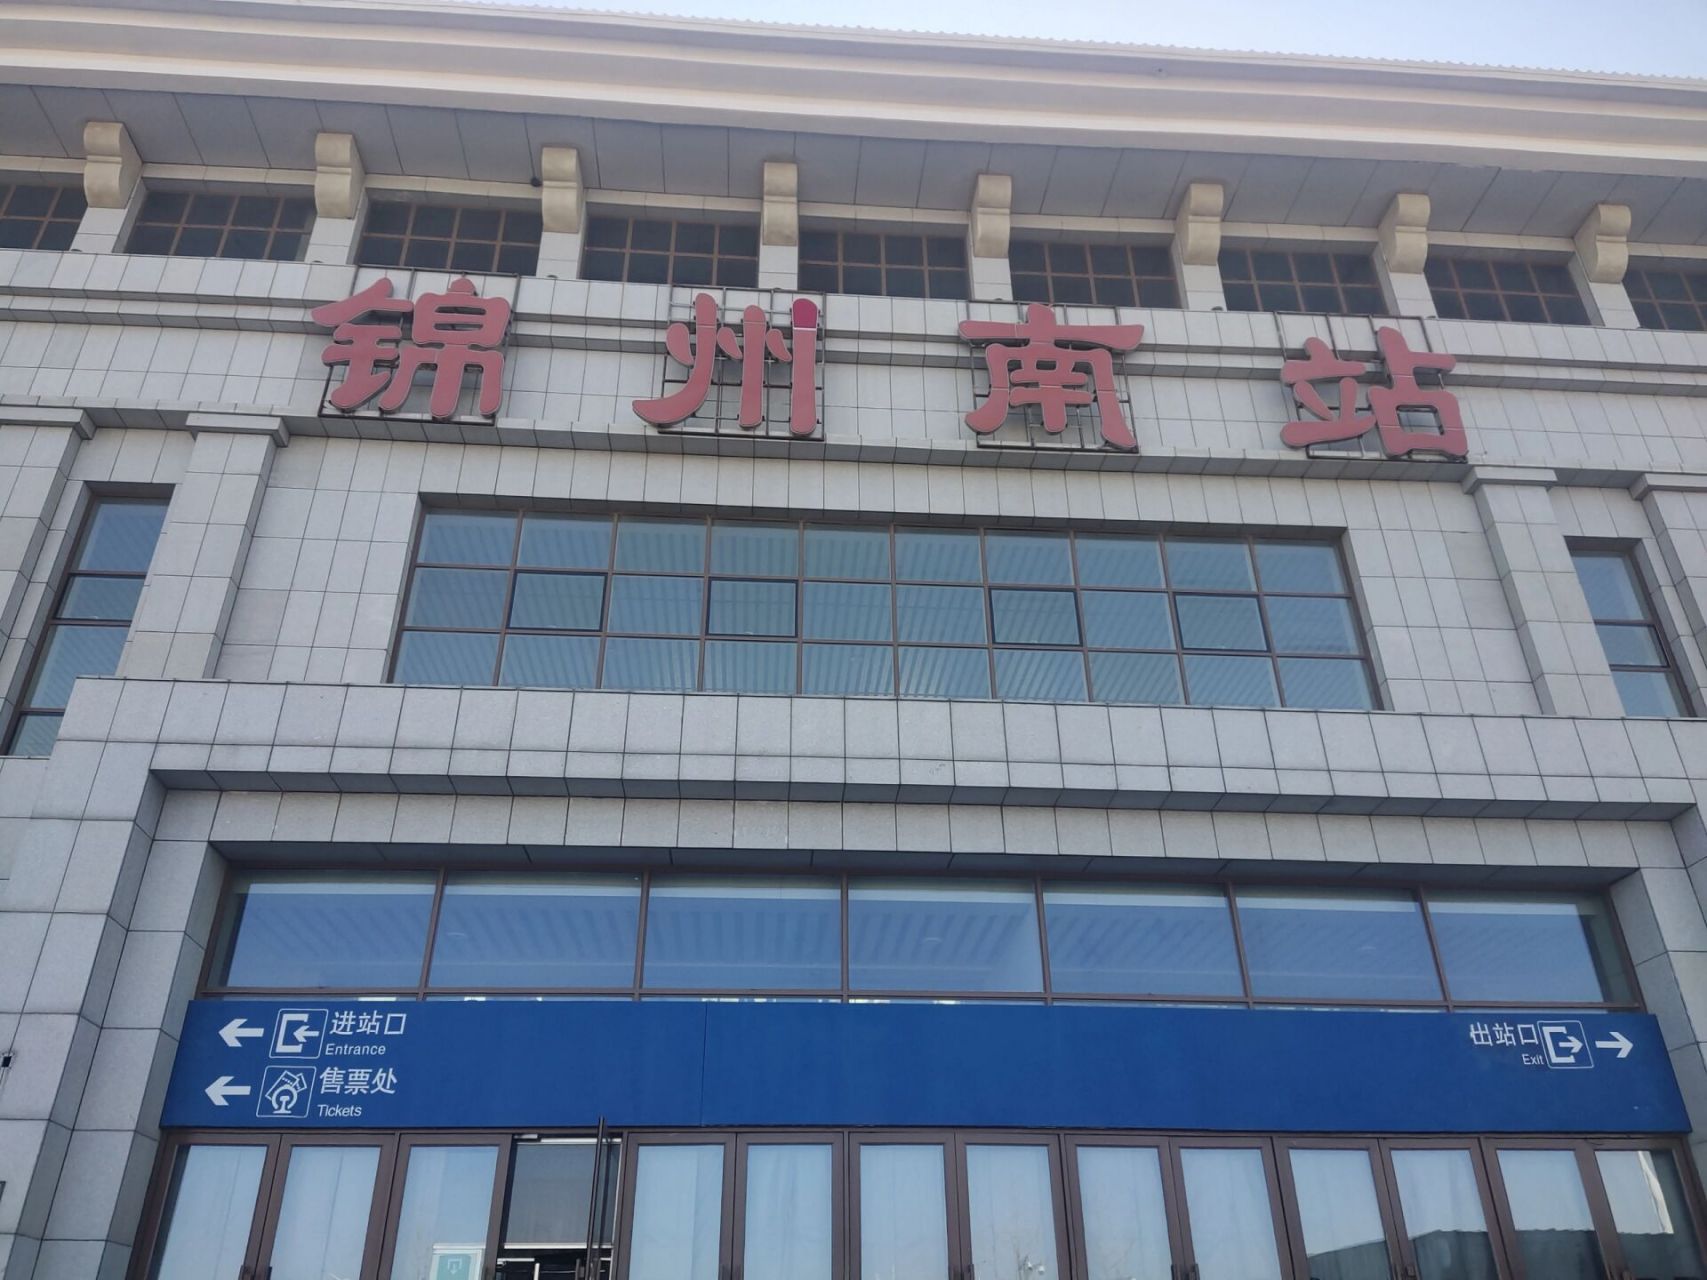 锦州南站照片图片